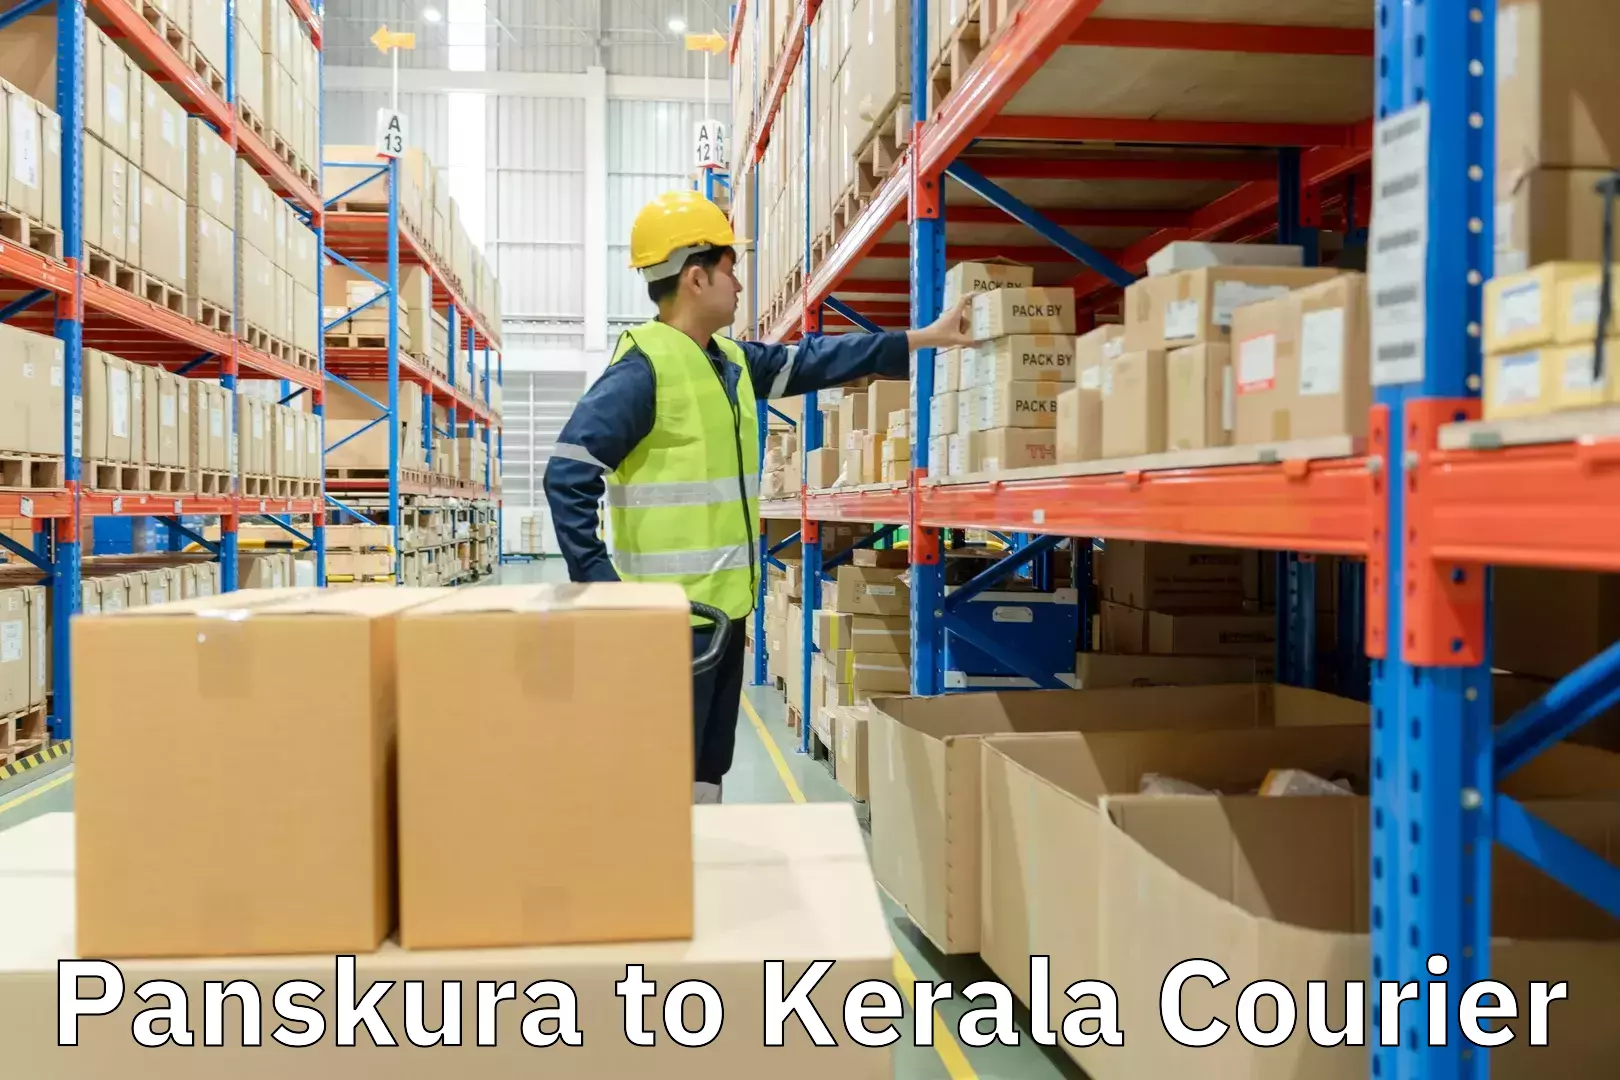 Express package handling Panskura to Kerala